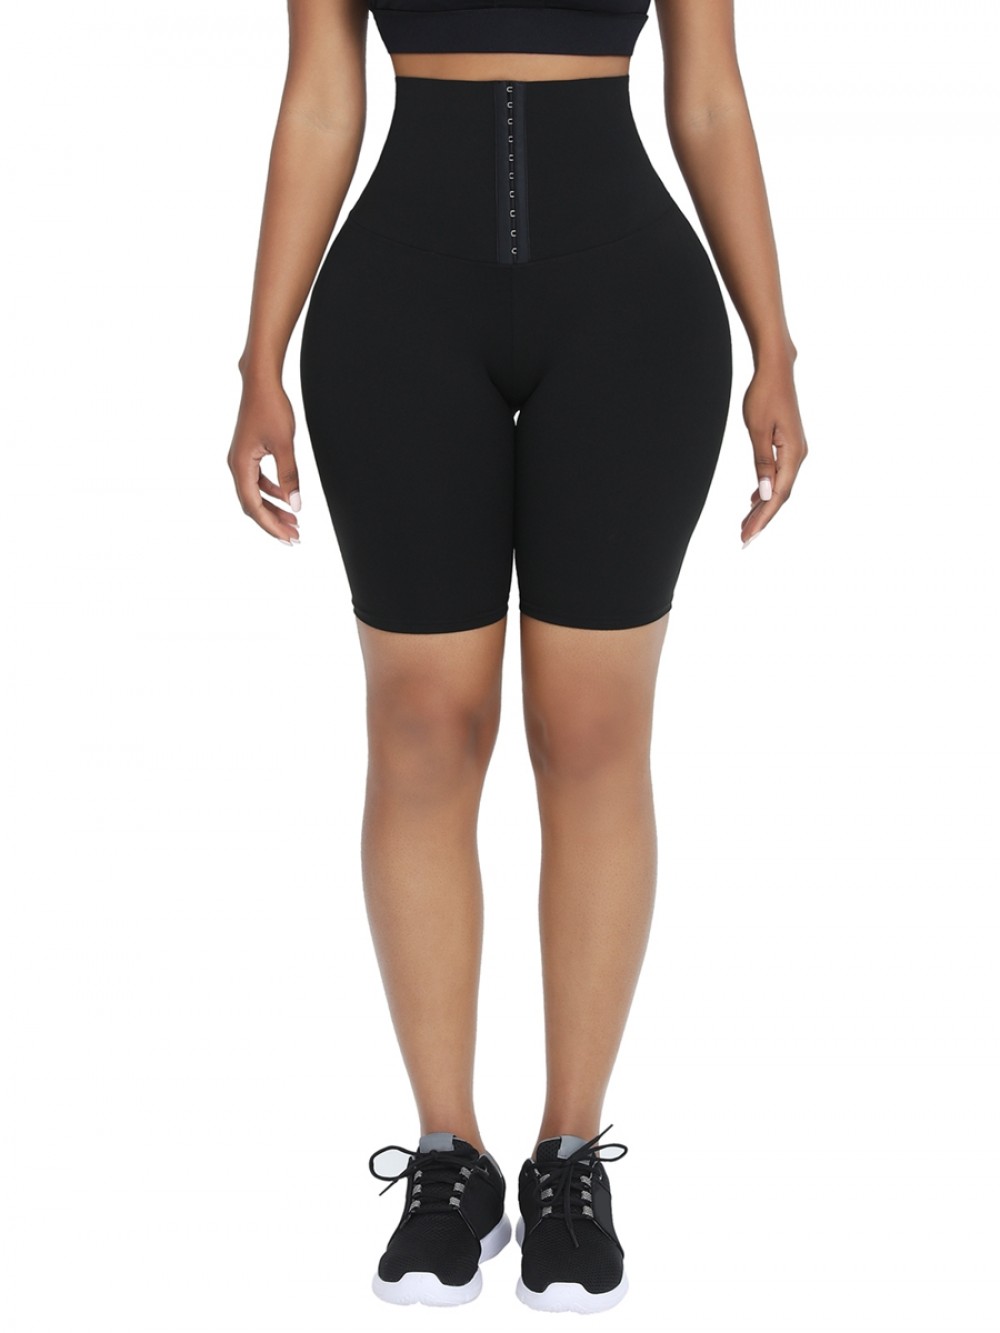 Black High Waist 2-In-1 Waist Trainer Shorts Mid-Thigh Wholesale Online